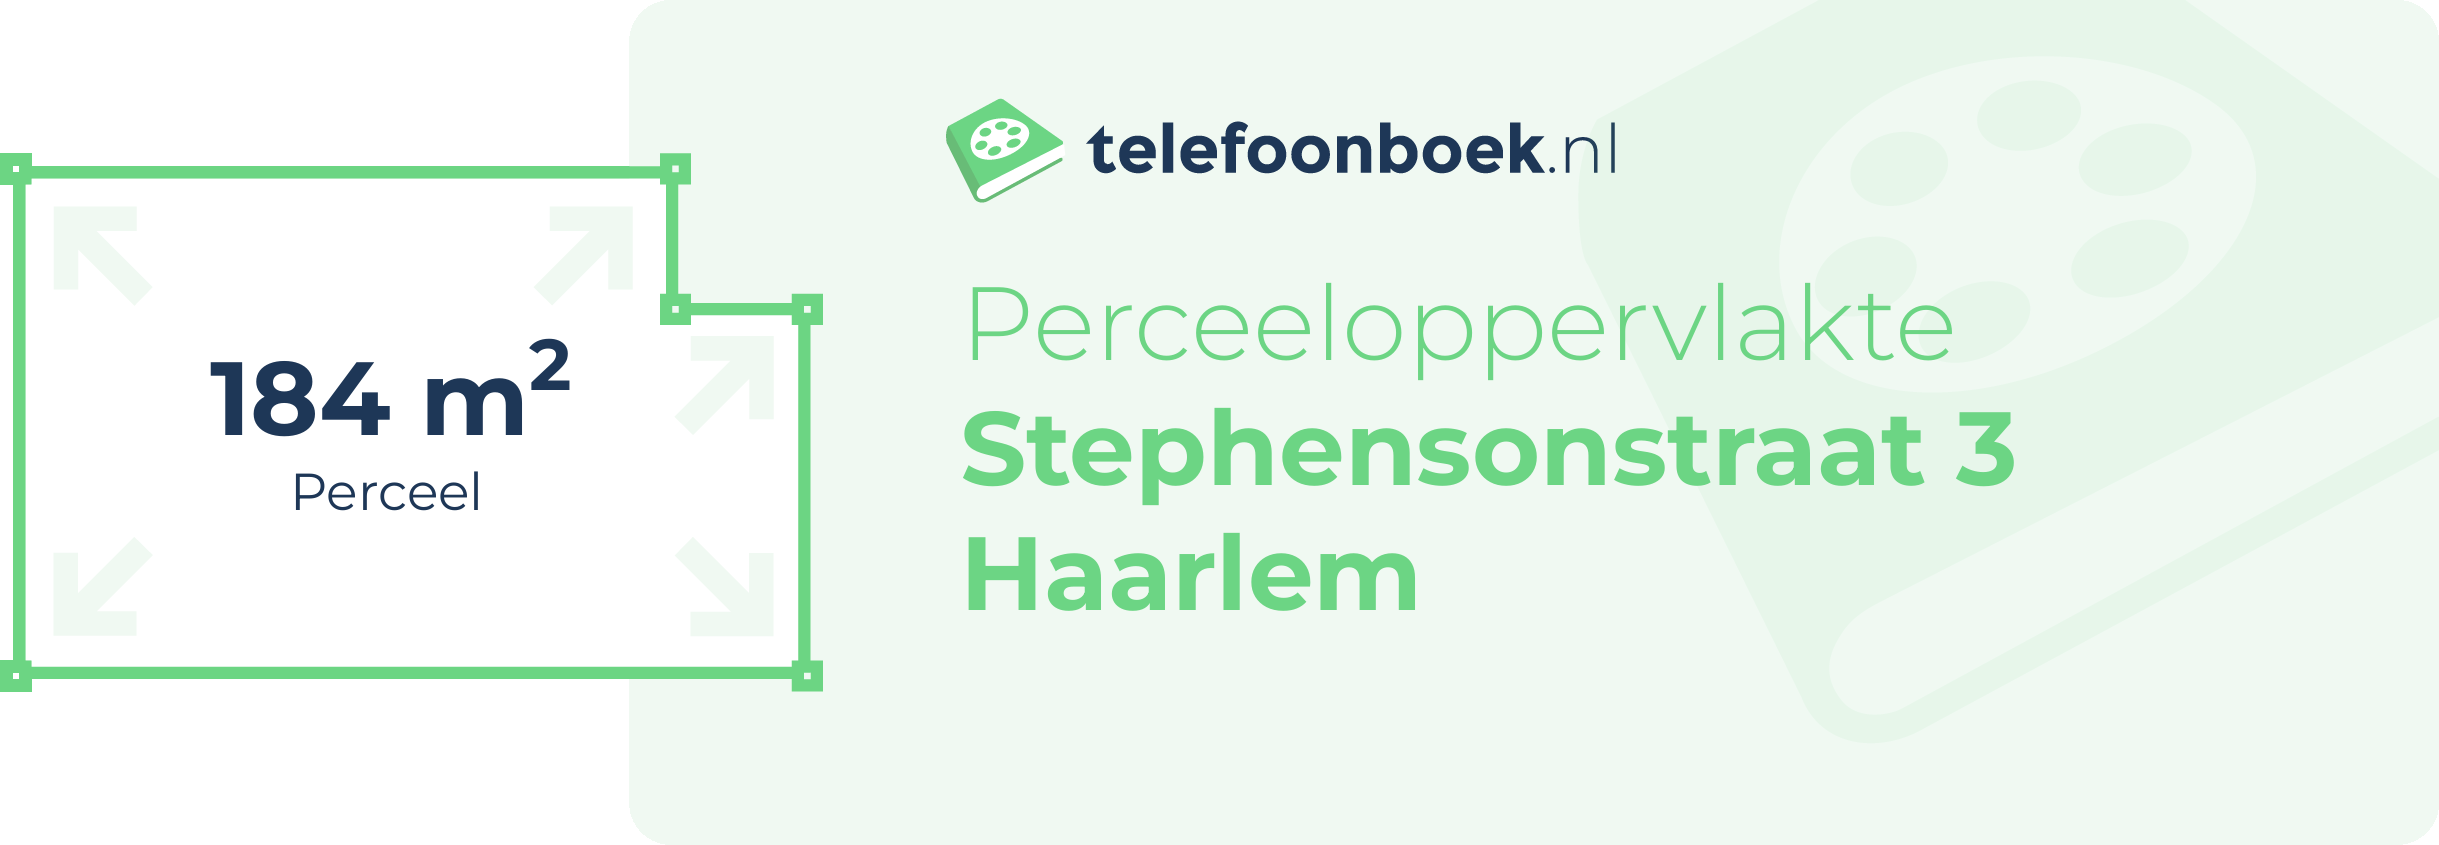 Perceeloppervlakte Stephensonstraat 3 Haarlem